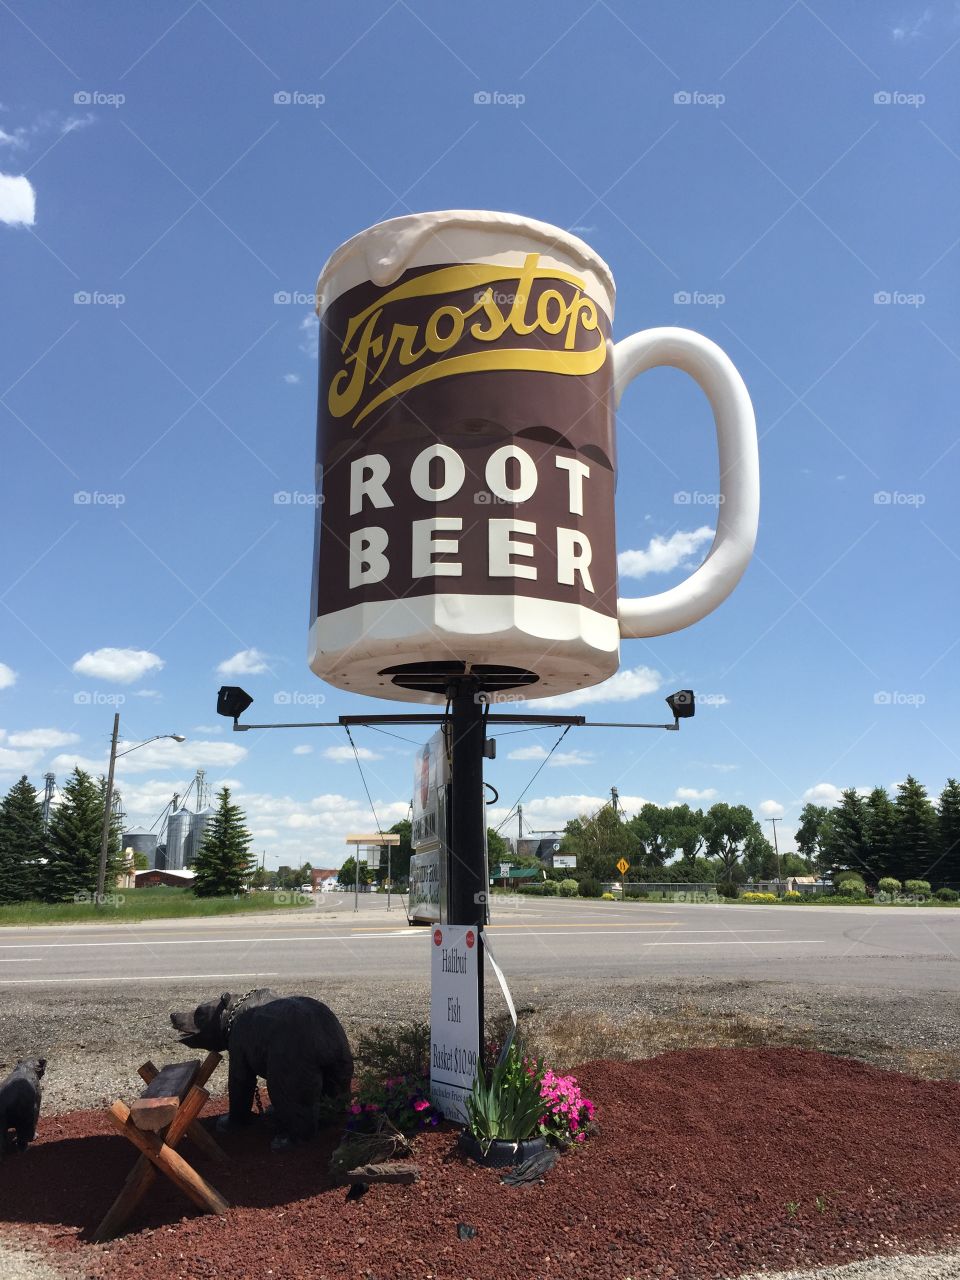 Vintage root beer sign